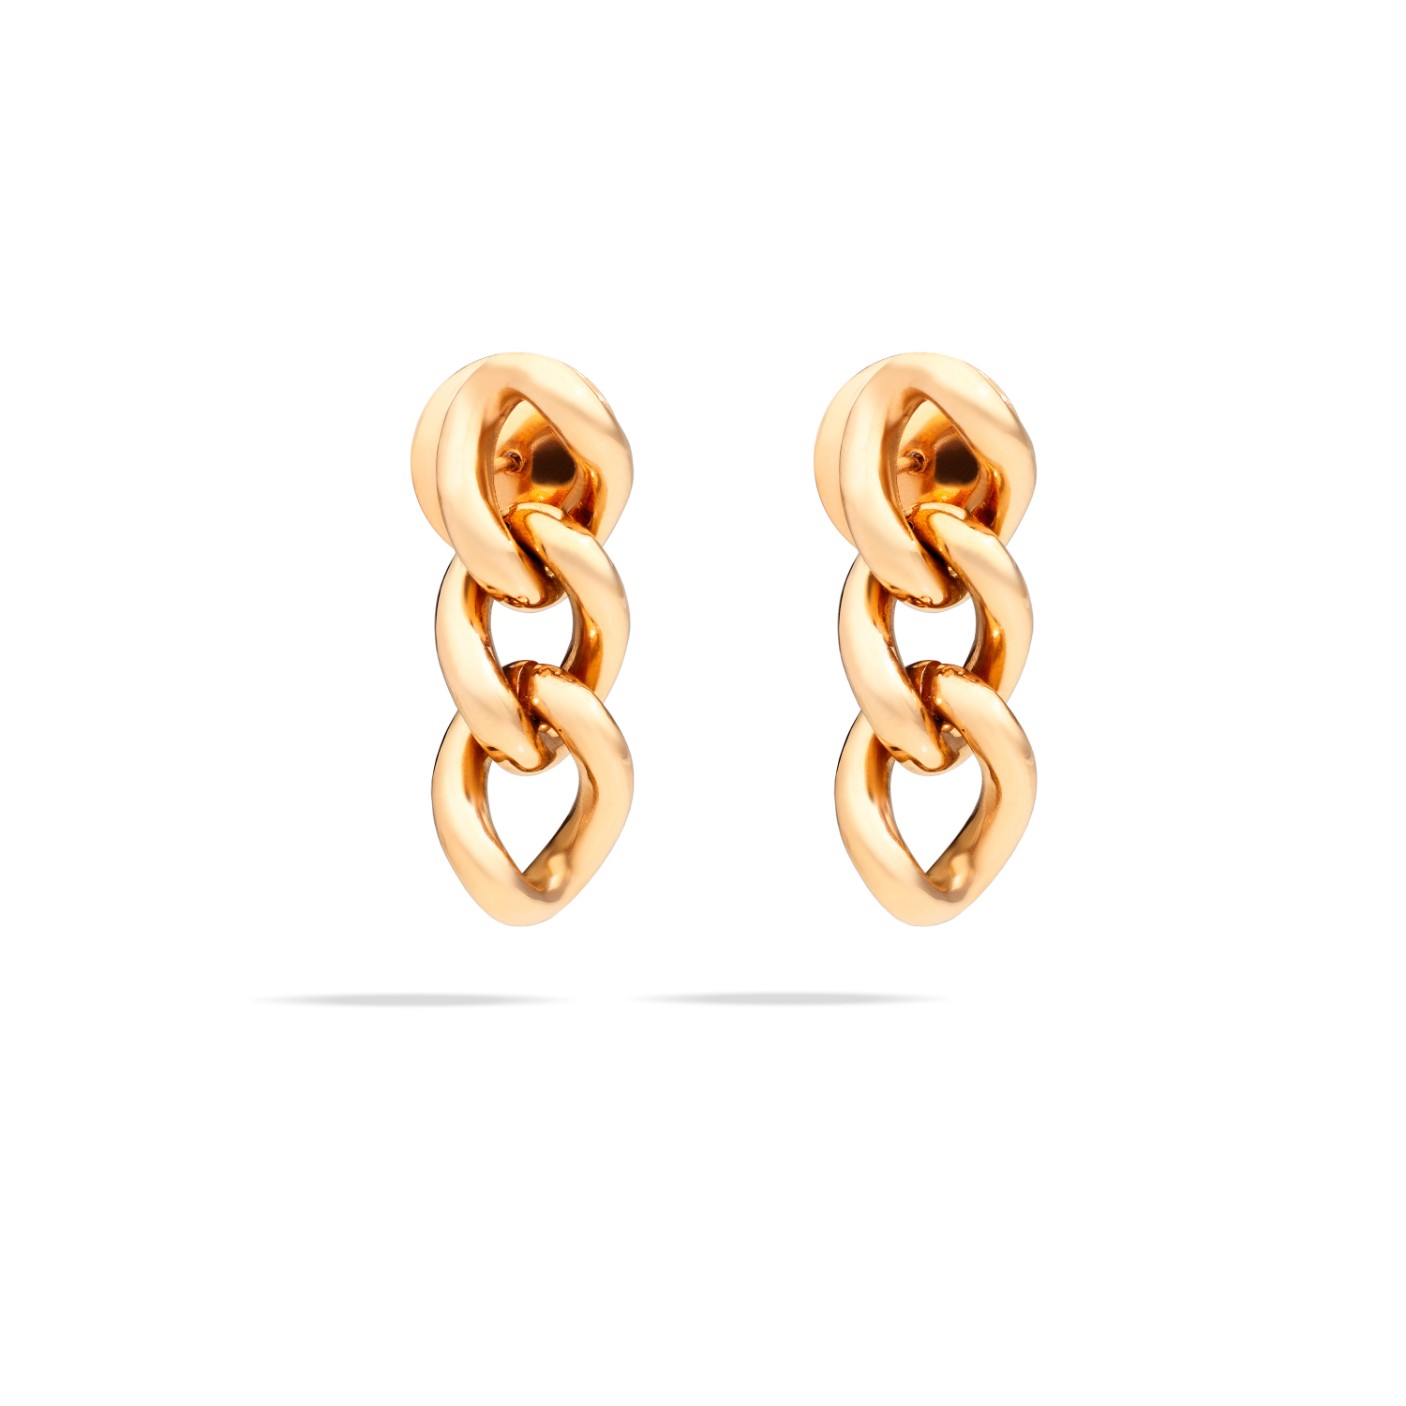 POC1010_O7000_00000_010_Pomellato_earrings-catene-rose-gold-18kt.jpg